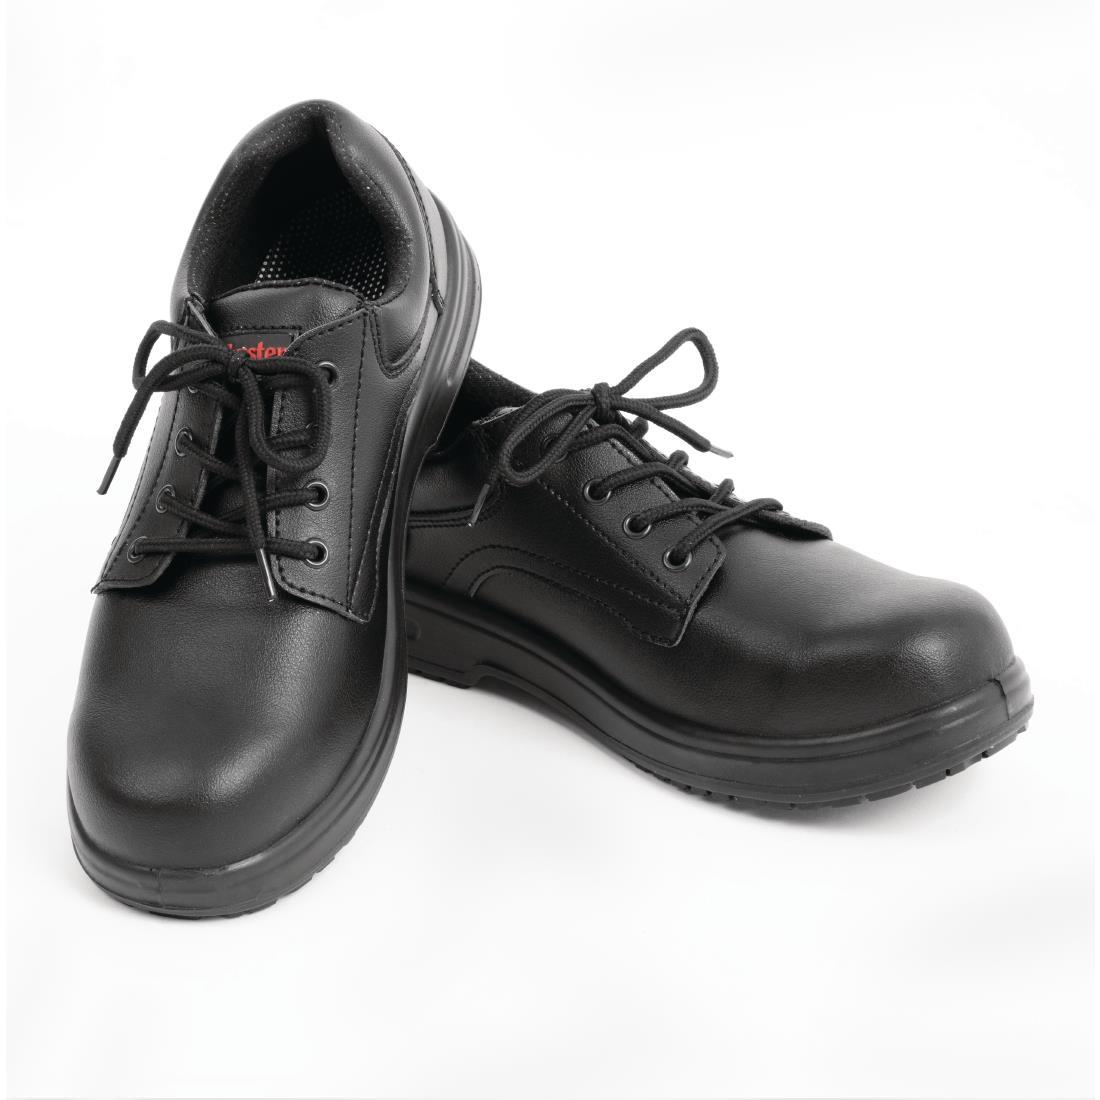 Slipbuster Basic Shoes Slip Resistant Black 44 - BB498-44  - 4